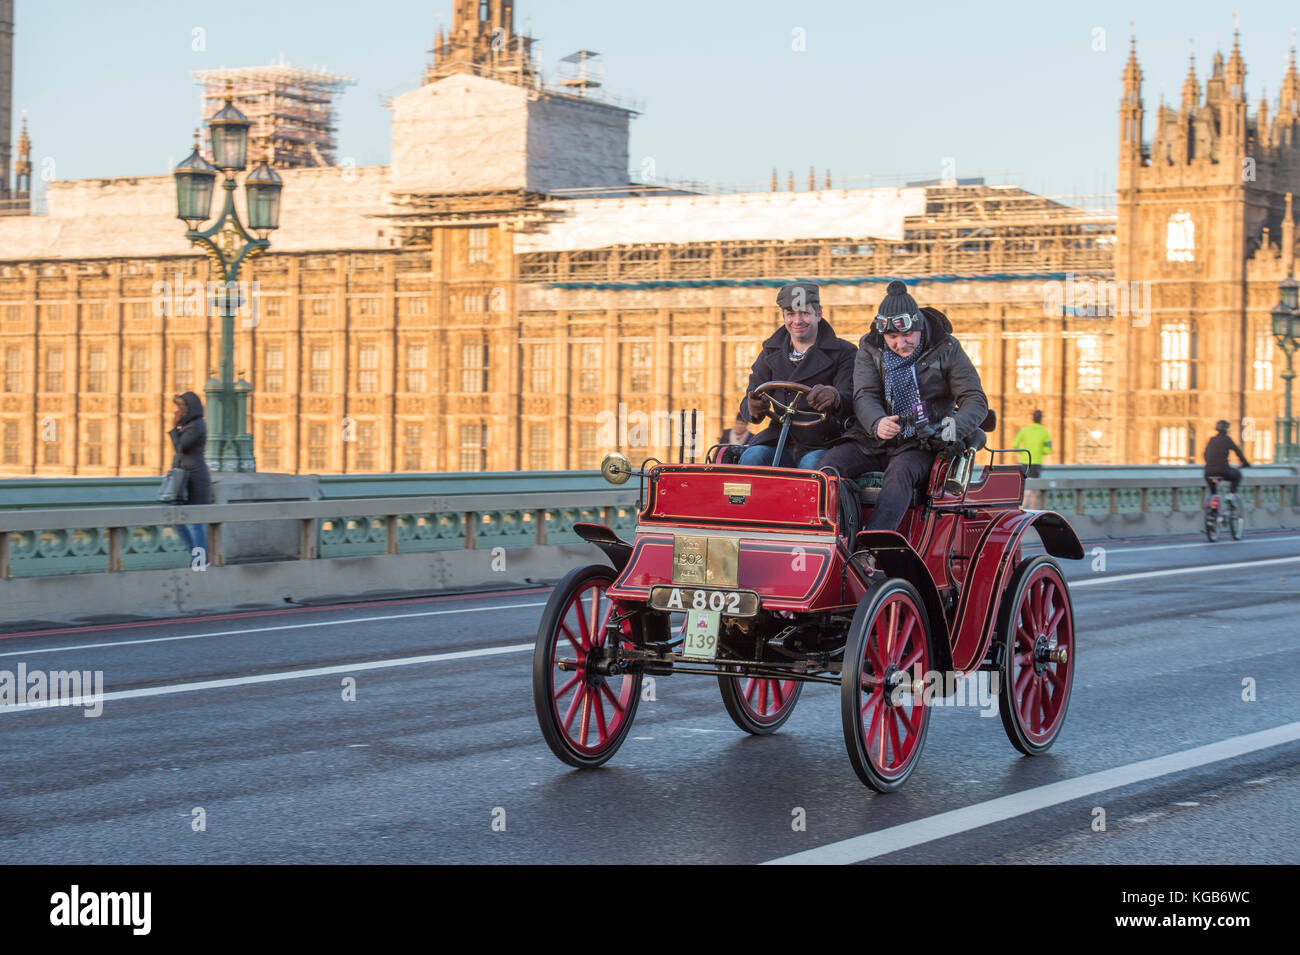 5 novembre 2017. Bonhams de Londres à Brighton, le plus long événement automobile au monde, 1902 Albion sur le pont de Westminster. Banque D'Images